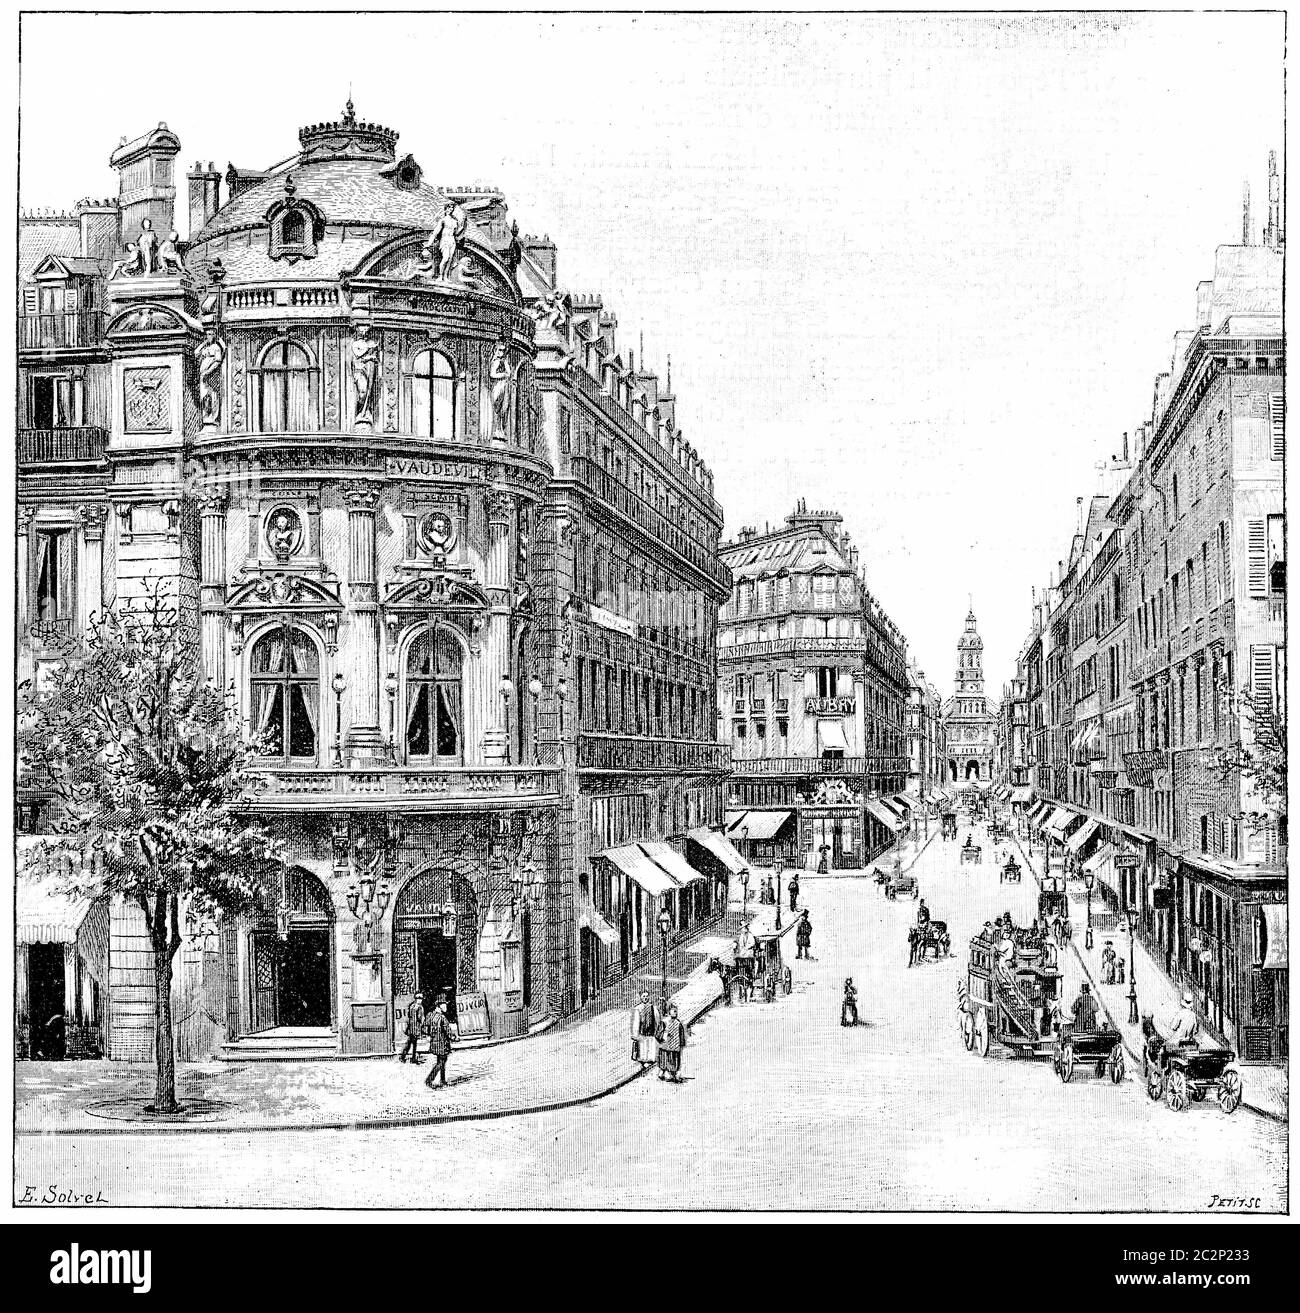 Théâtre vaudeville, rue de la chaussée d'Antin, Sainte Trinité, illustration gravée d'époque. Paris - Auguste VITU – 1890. Banque D'Images